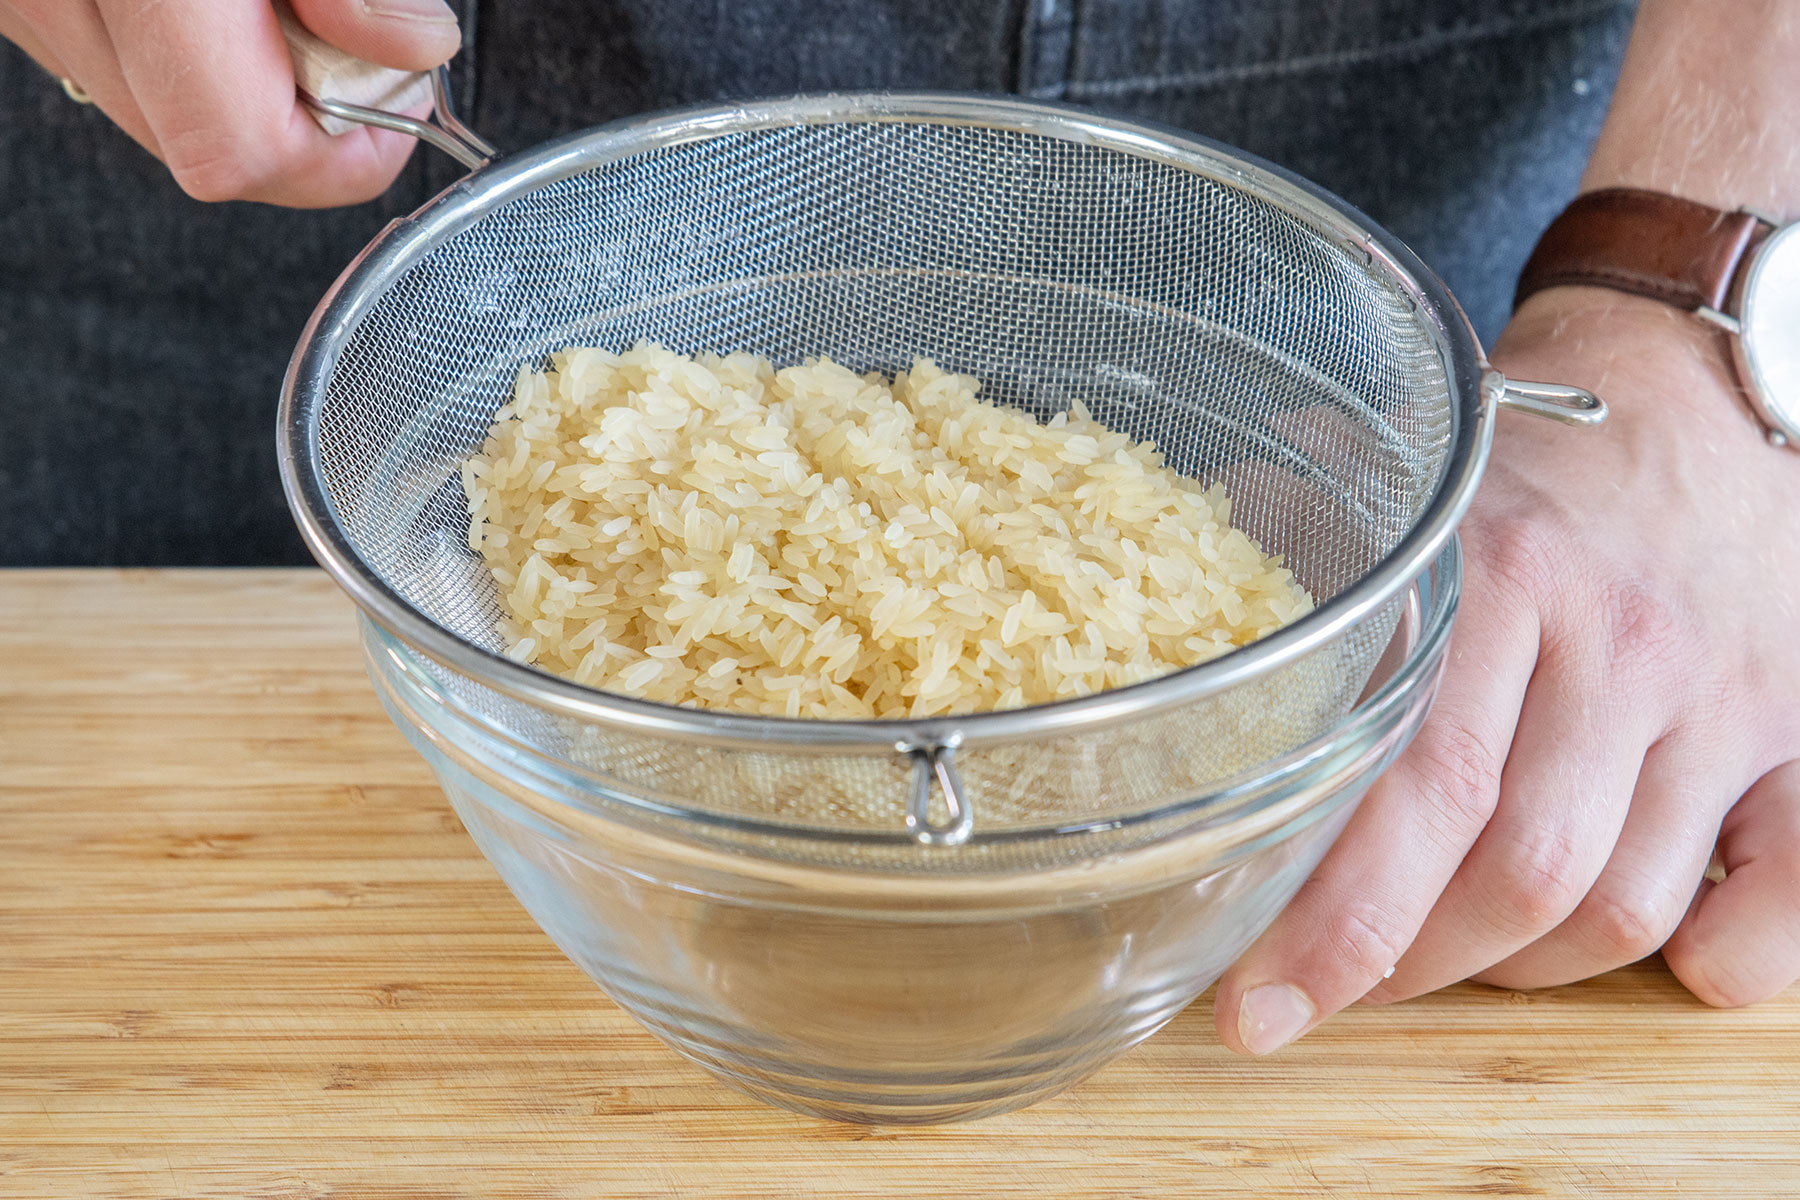 gewaschenen Reis abtropfen lassen